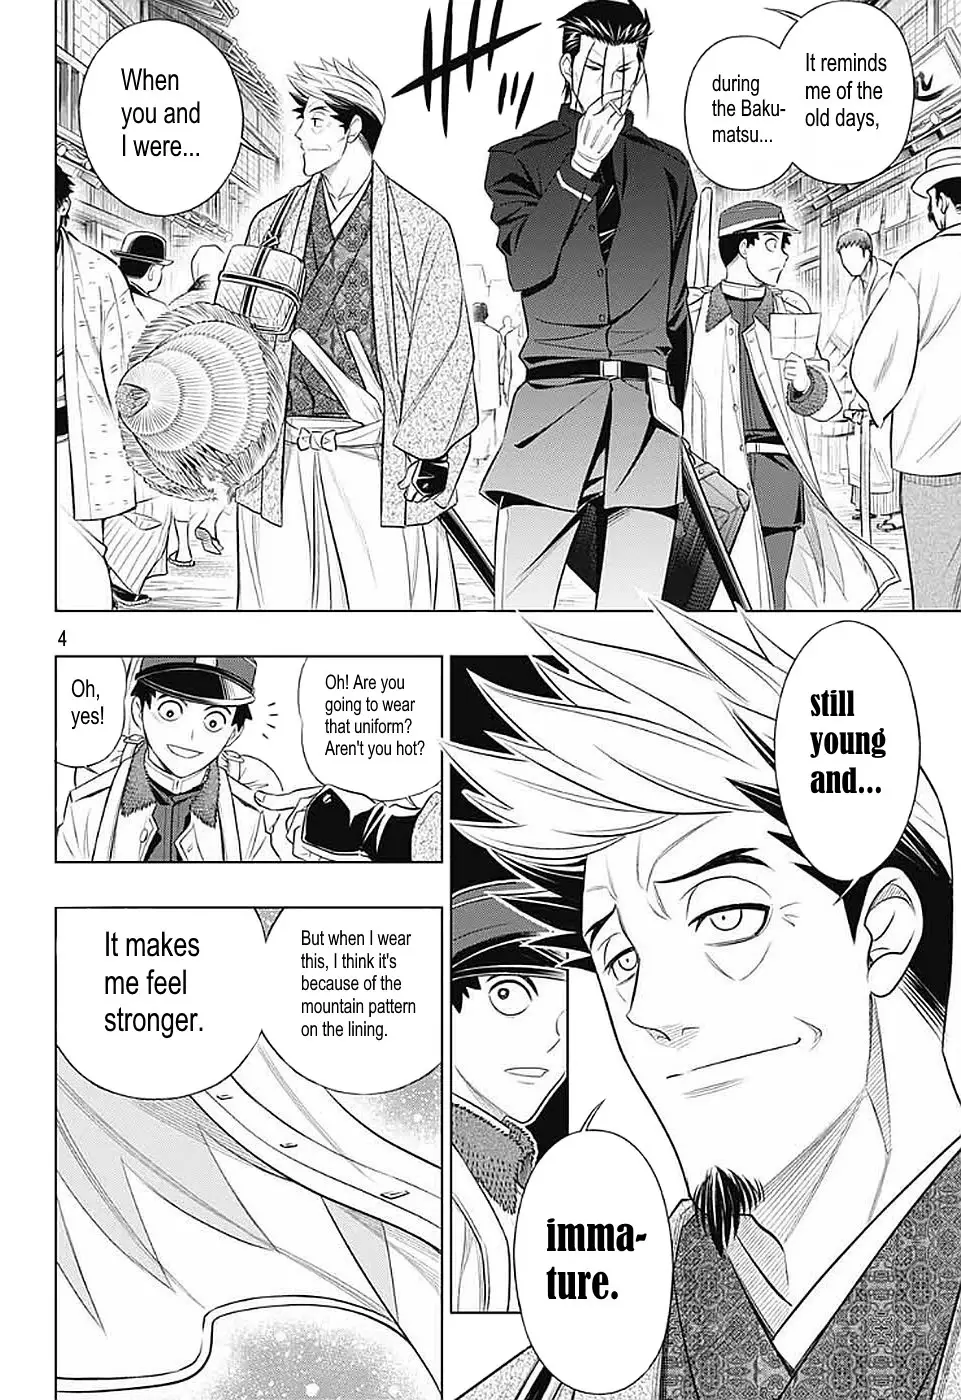 Rurouni Kenshin: Hokkaido Arc - 36 page 4